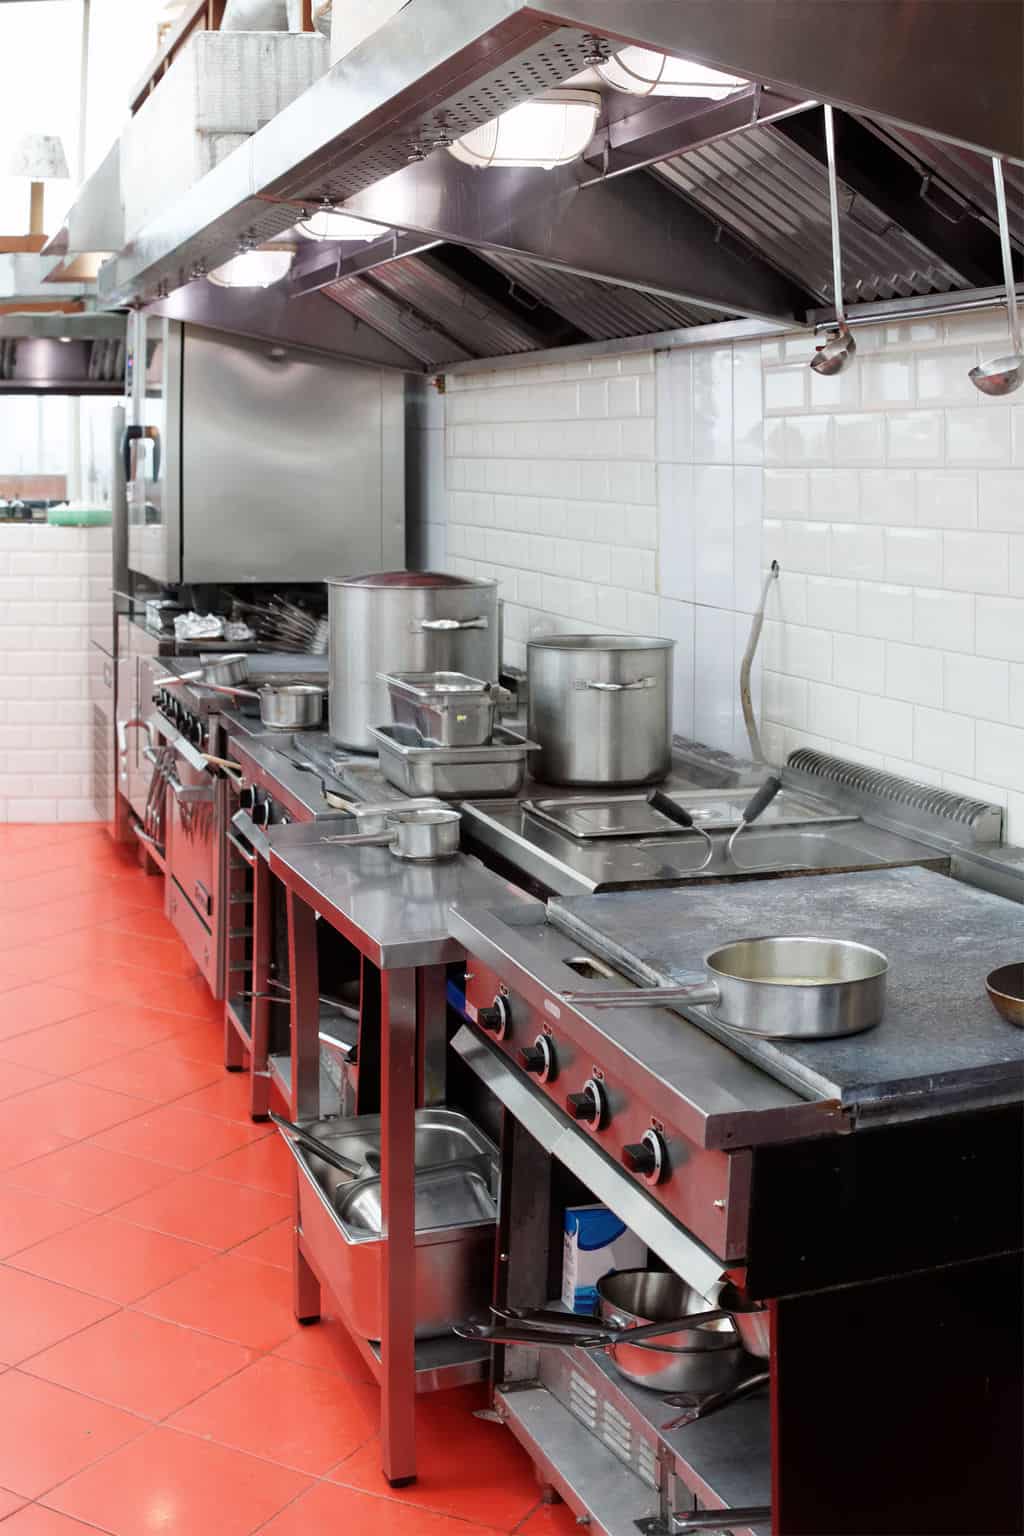 The Best Restaurant Kitchen Flooring Ideas A Design For Your Floor Plan